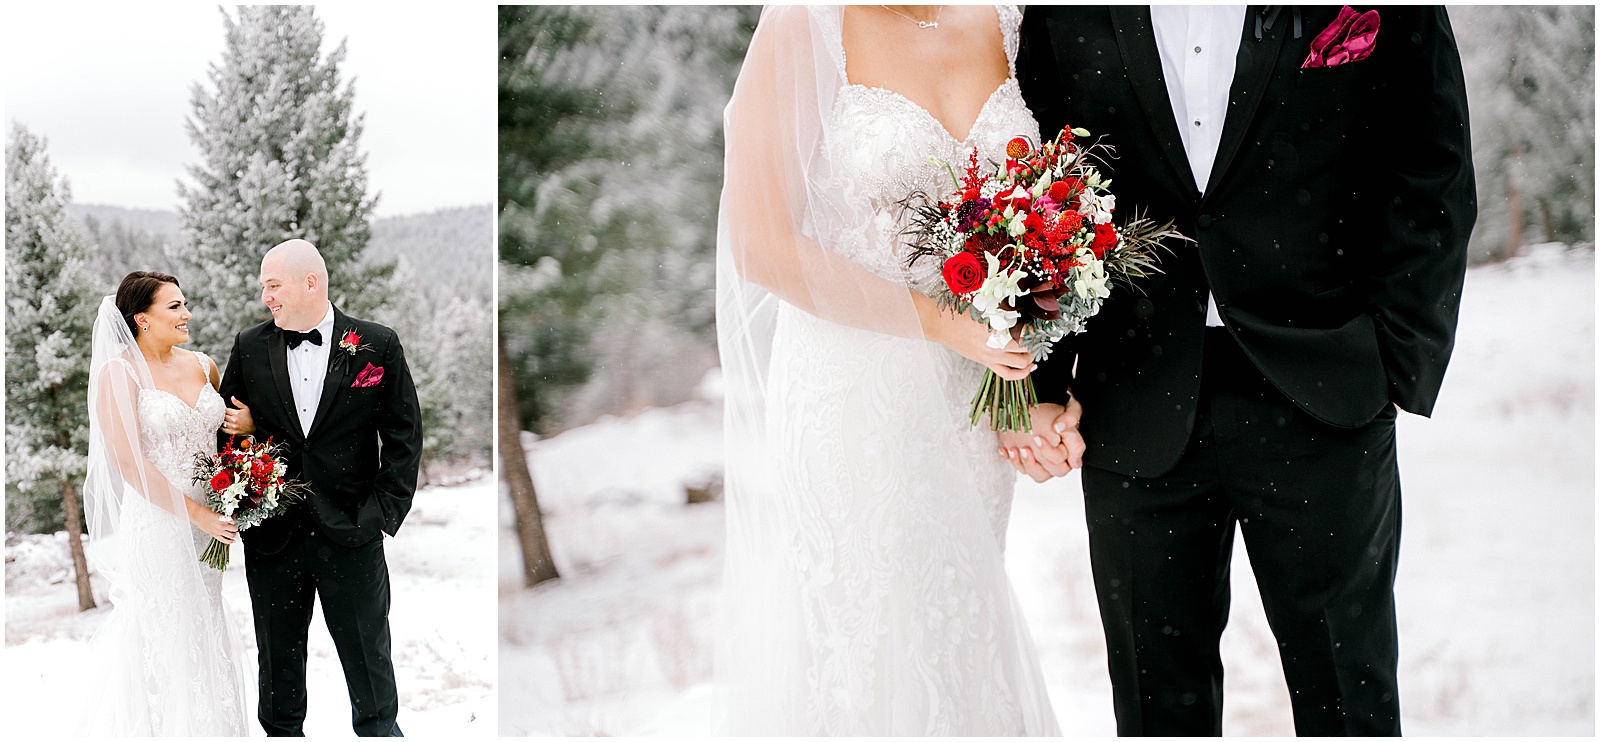 winter bride and groom photos